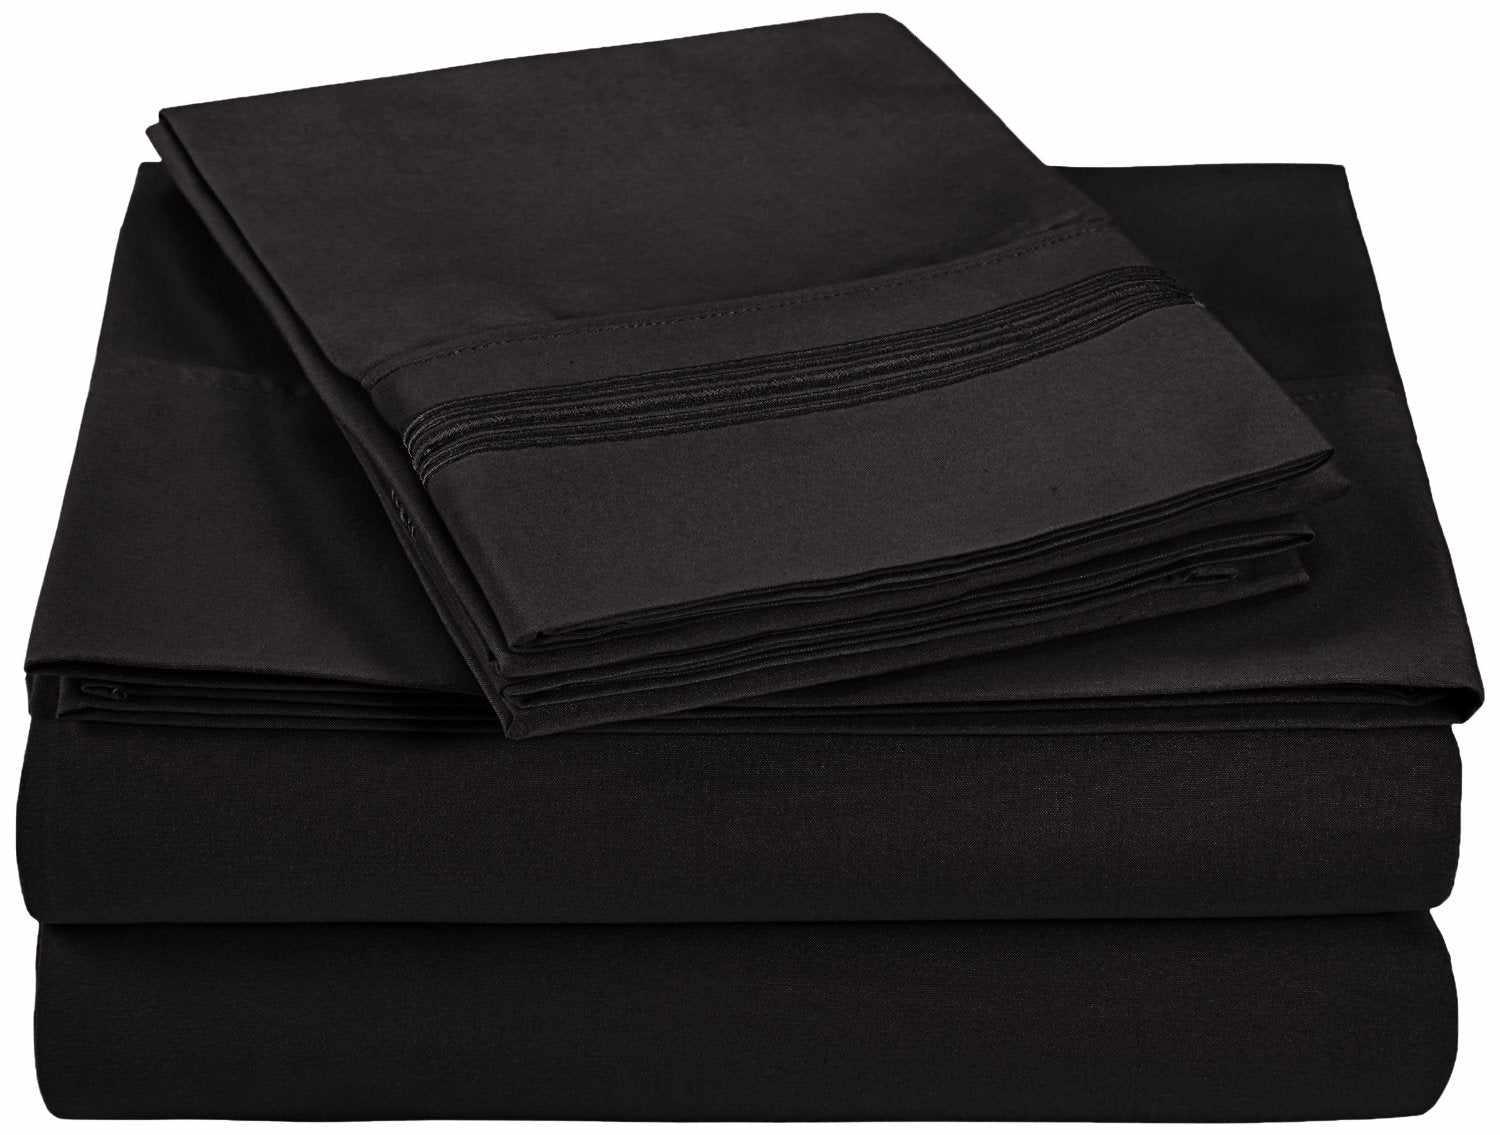 Superior 5 Embroidered Lines Wrinkle Resistant Microfiber Deep Pocket Sheet Set - Black